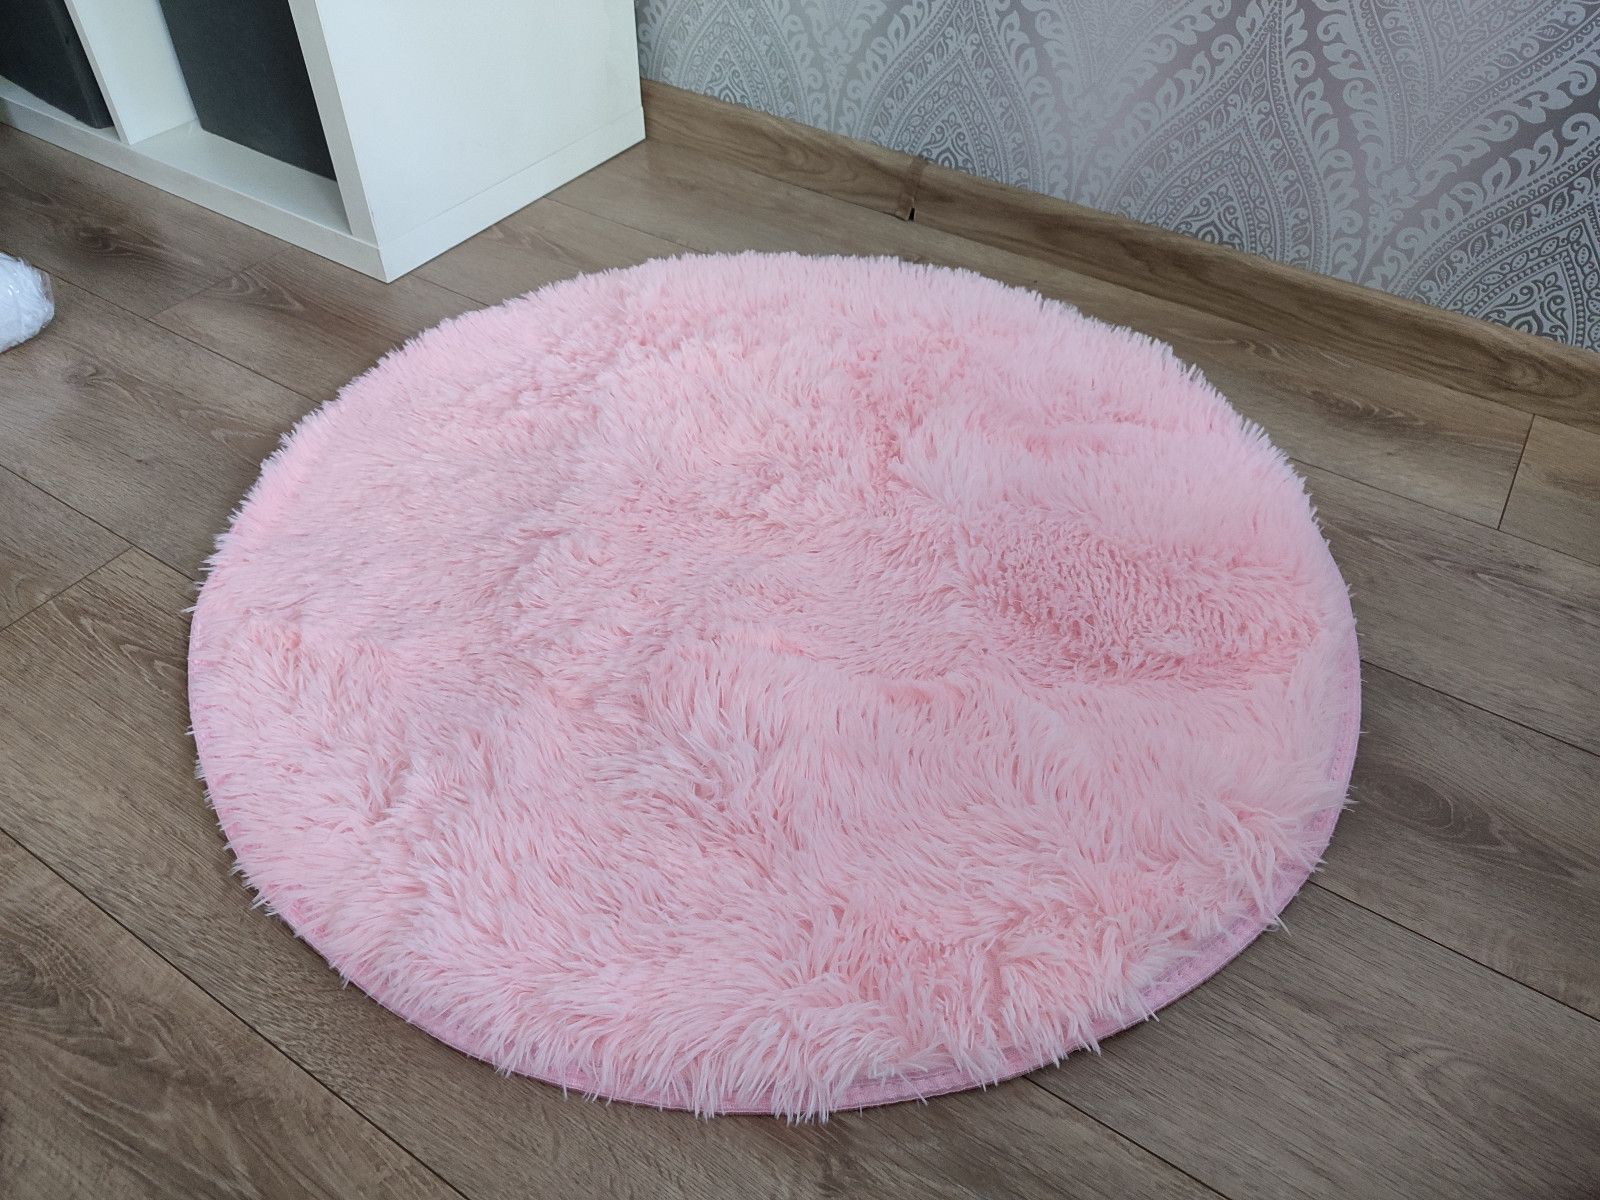 Nowy różowy dywan puszysty okrągły 80 cm